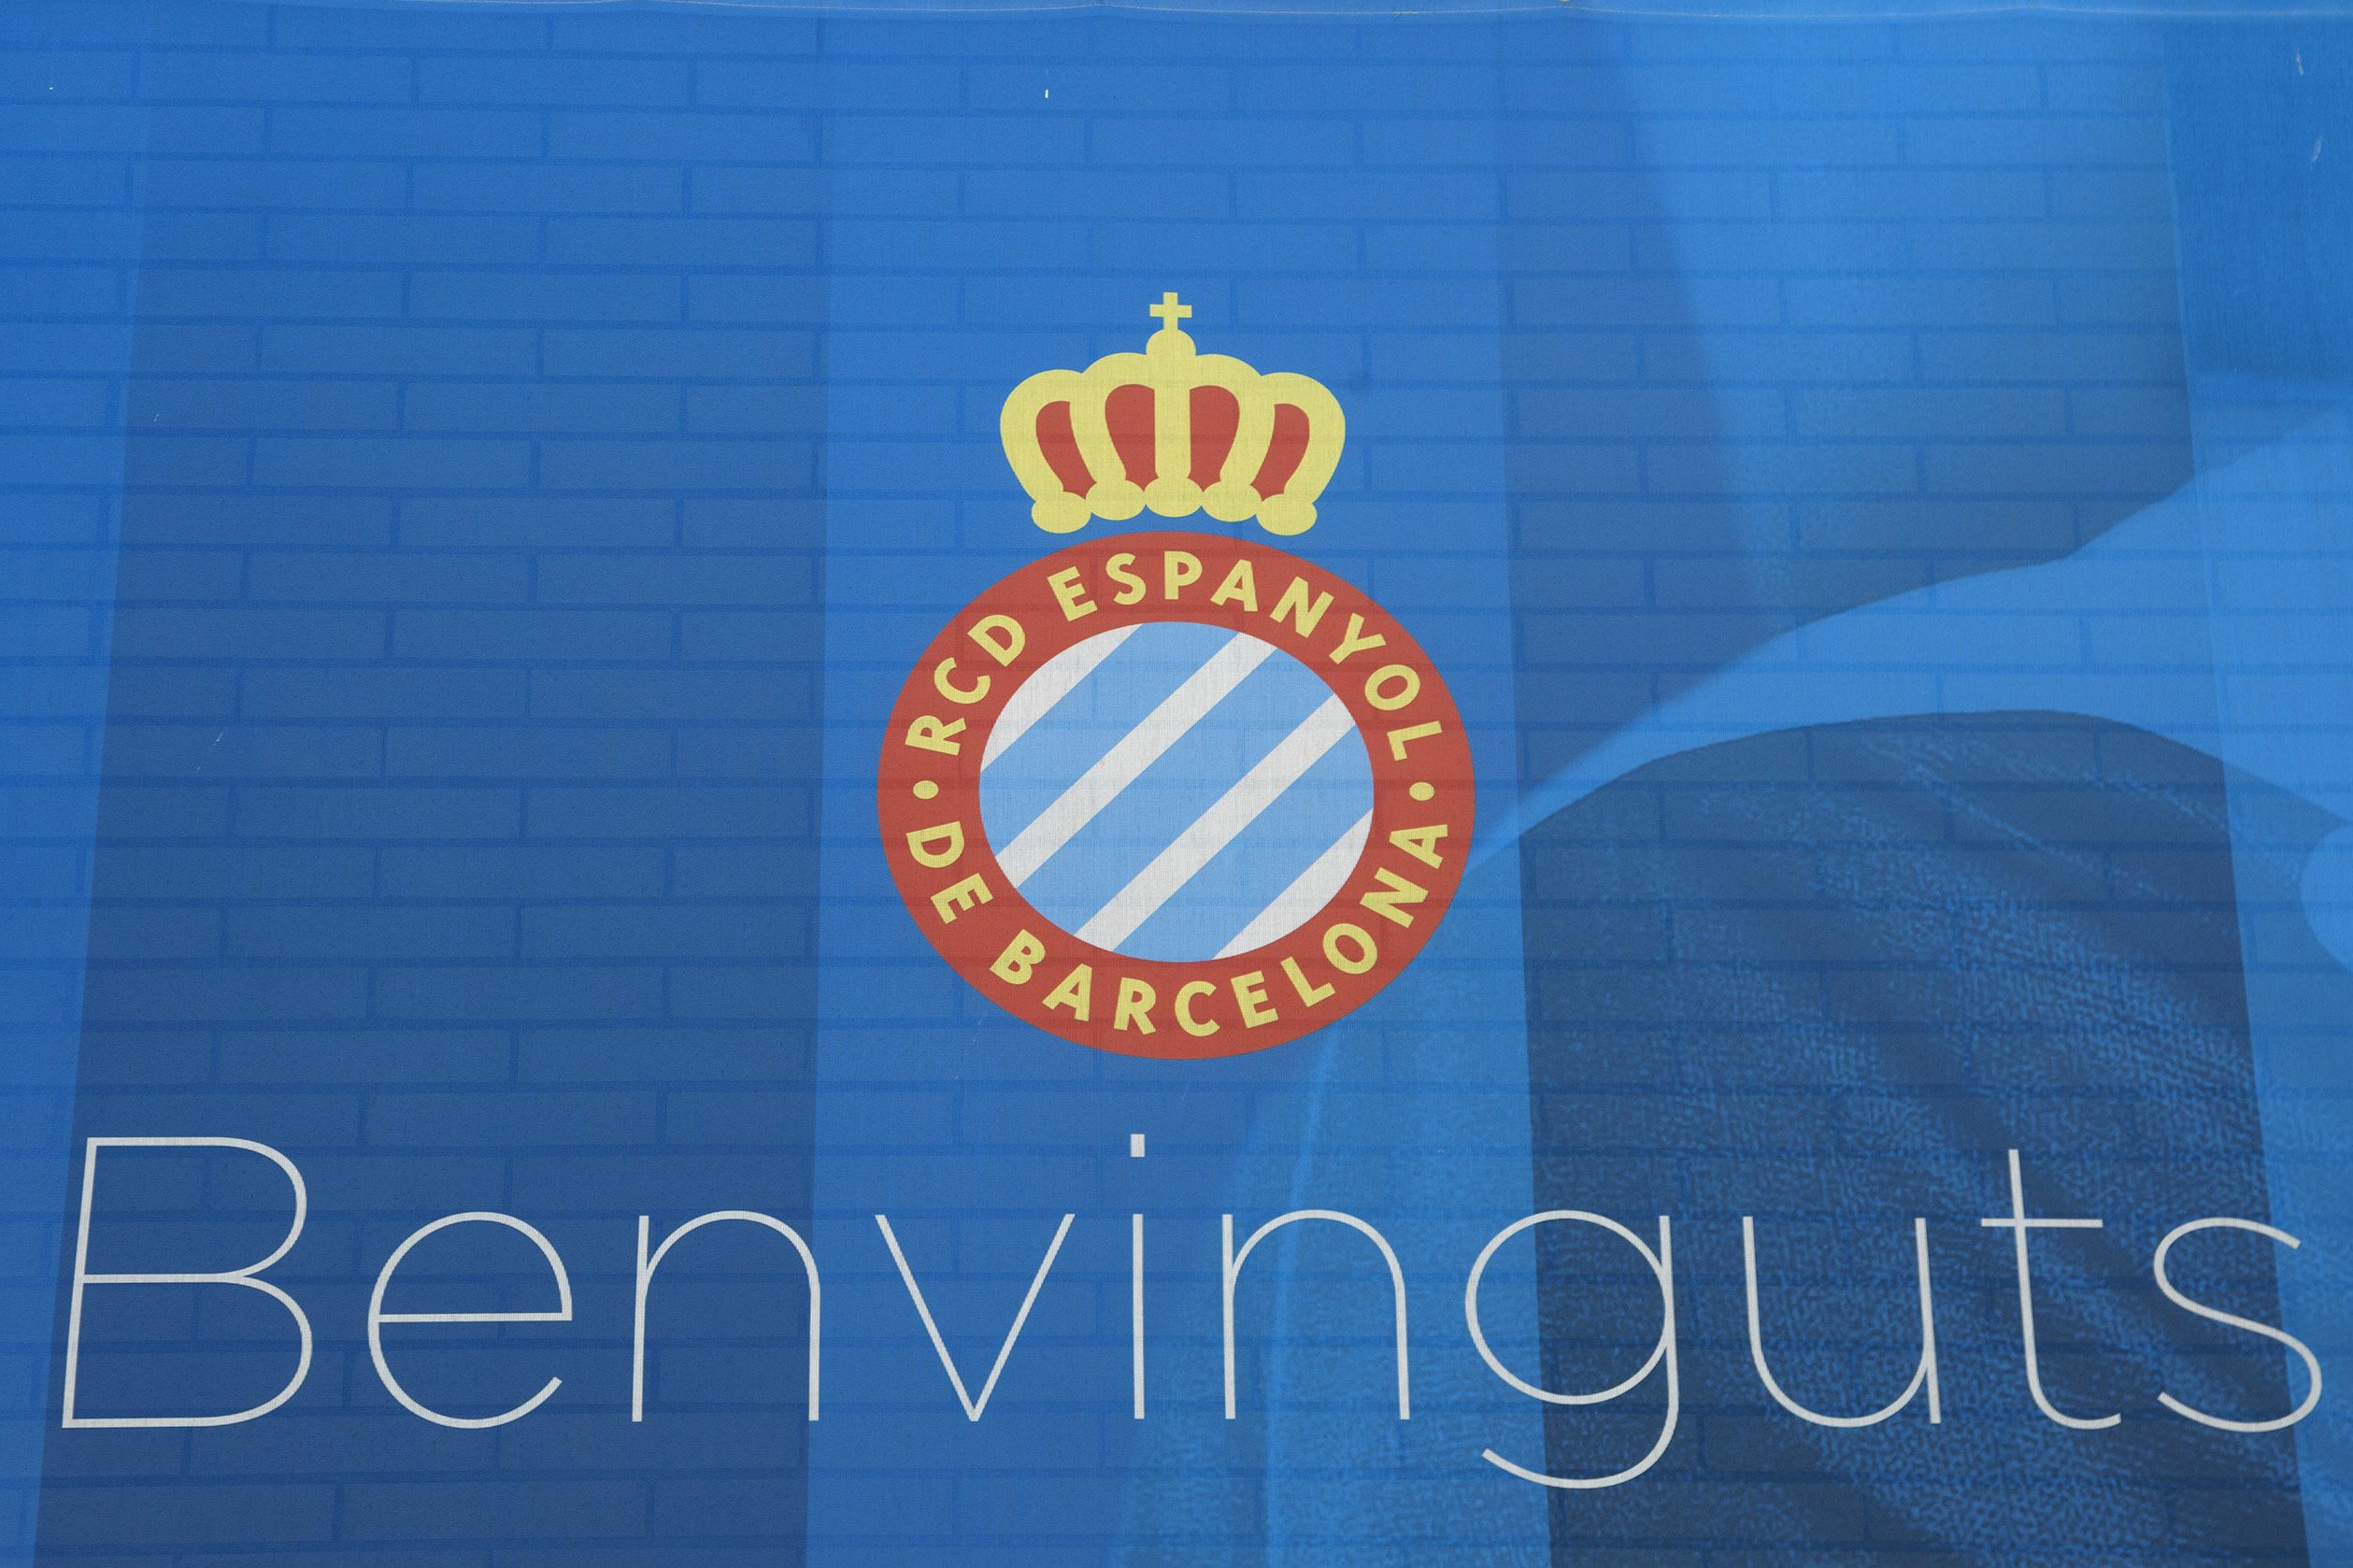 L'Espanyol promociona "negocis pericos" i Twitter els titlla d'espanyolistes